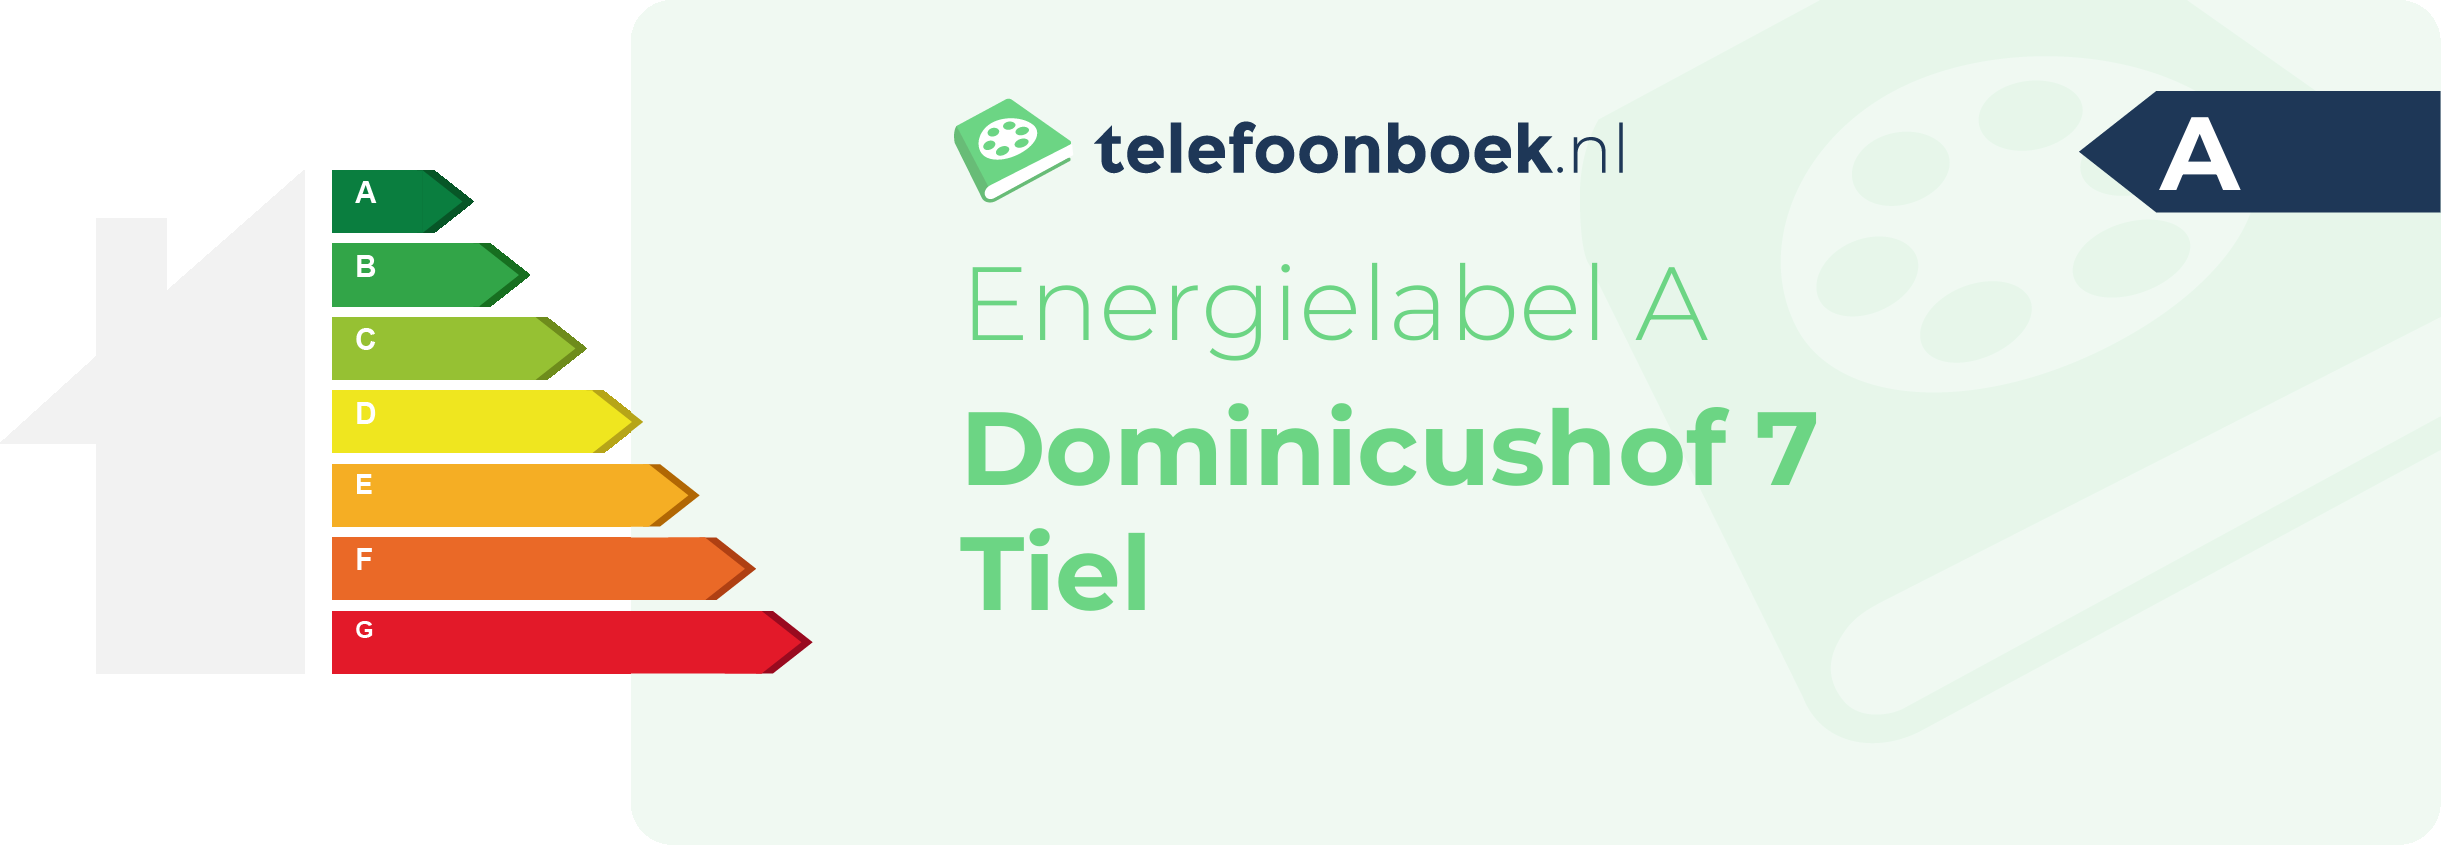 Energielabel Dominicushof 7 Tiel